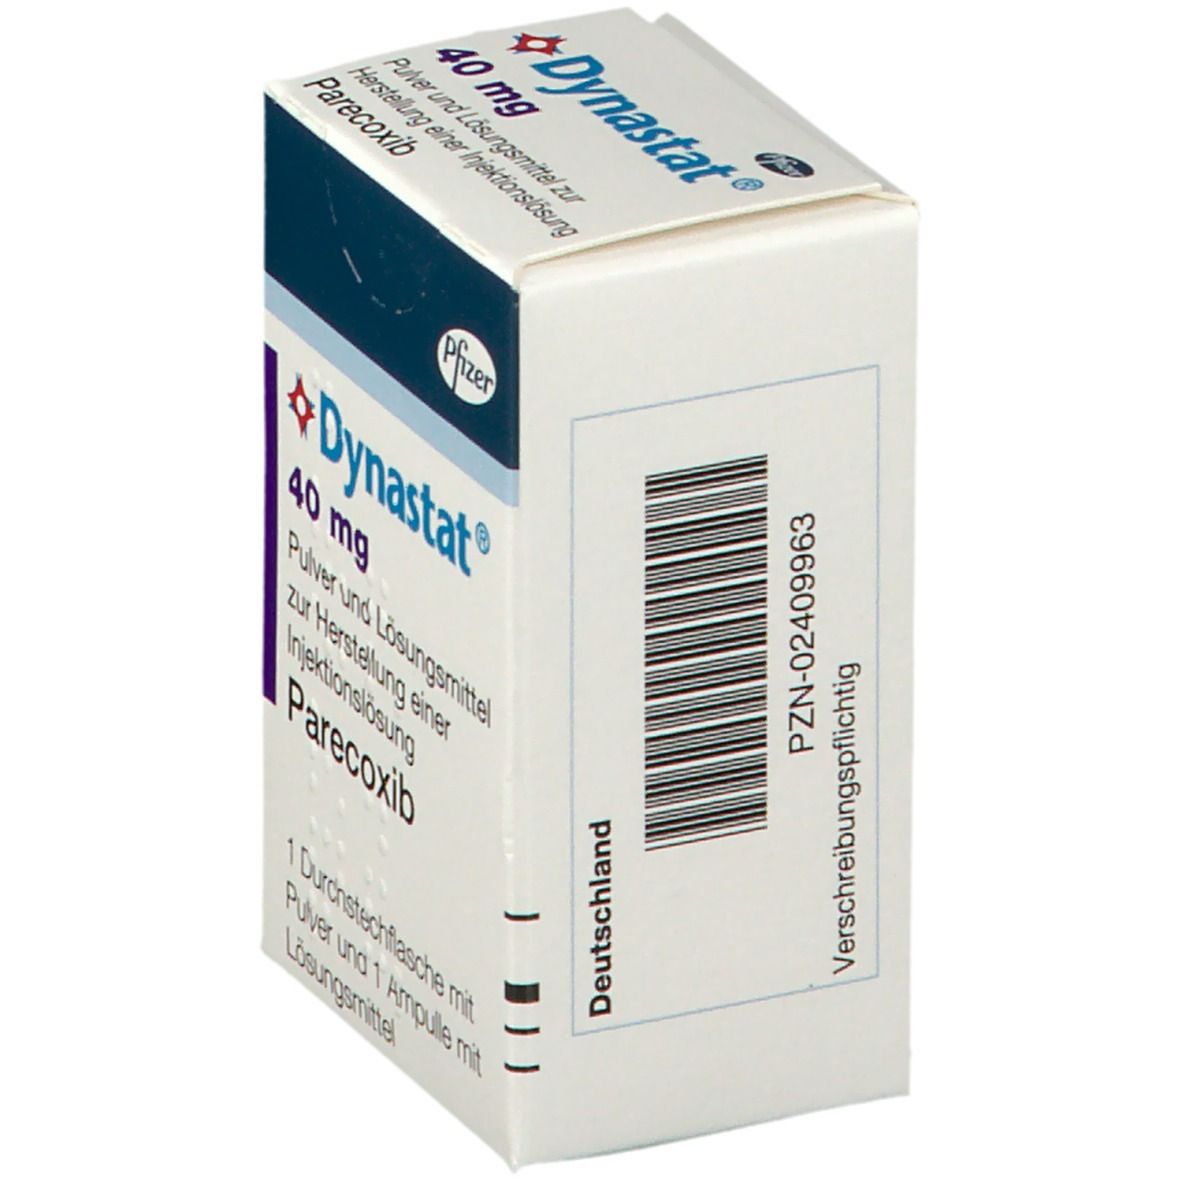 Dynastat® 40 mg